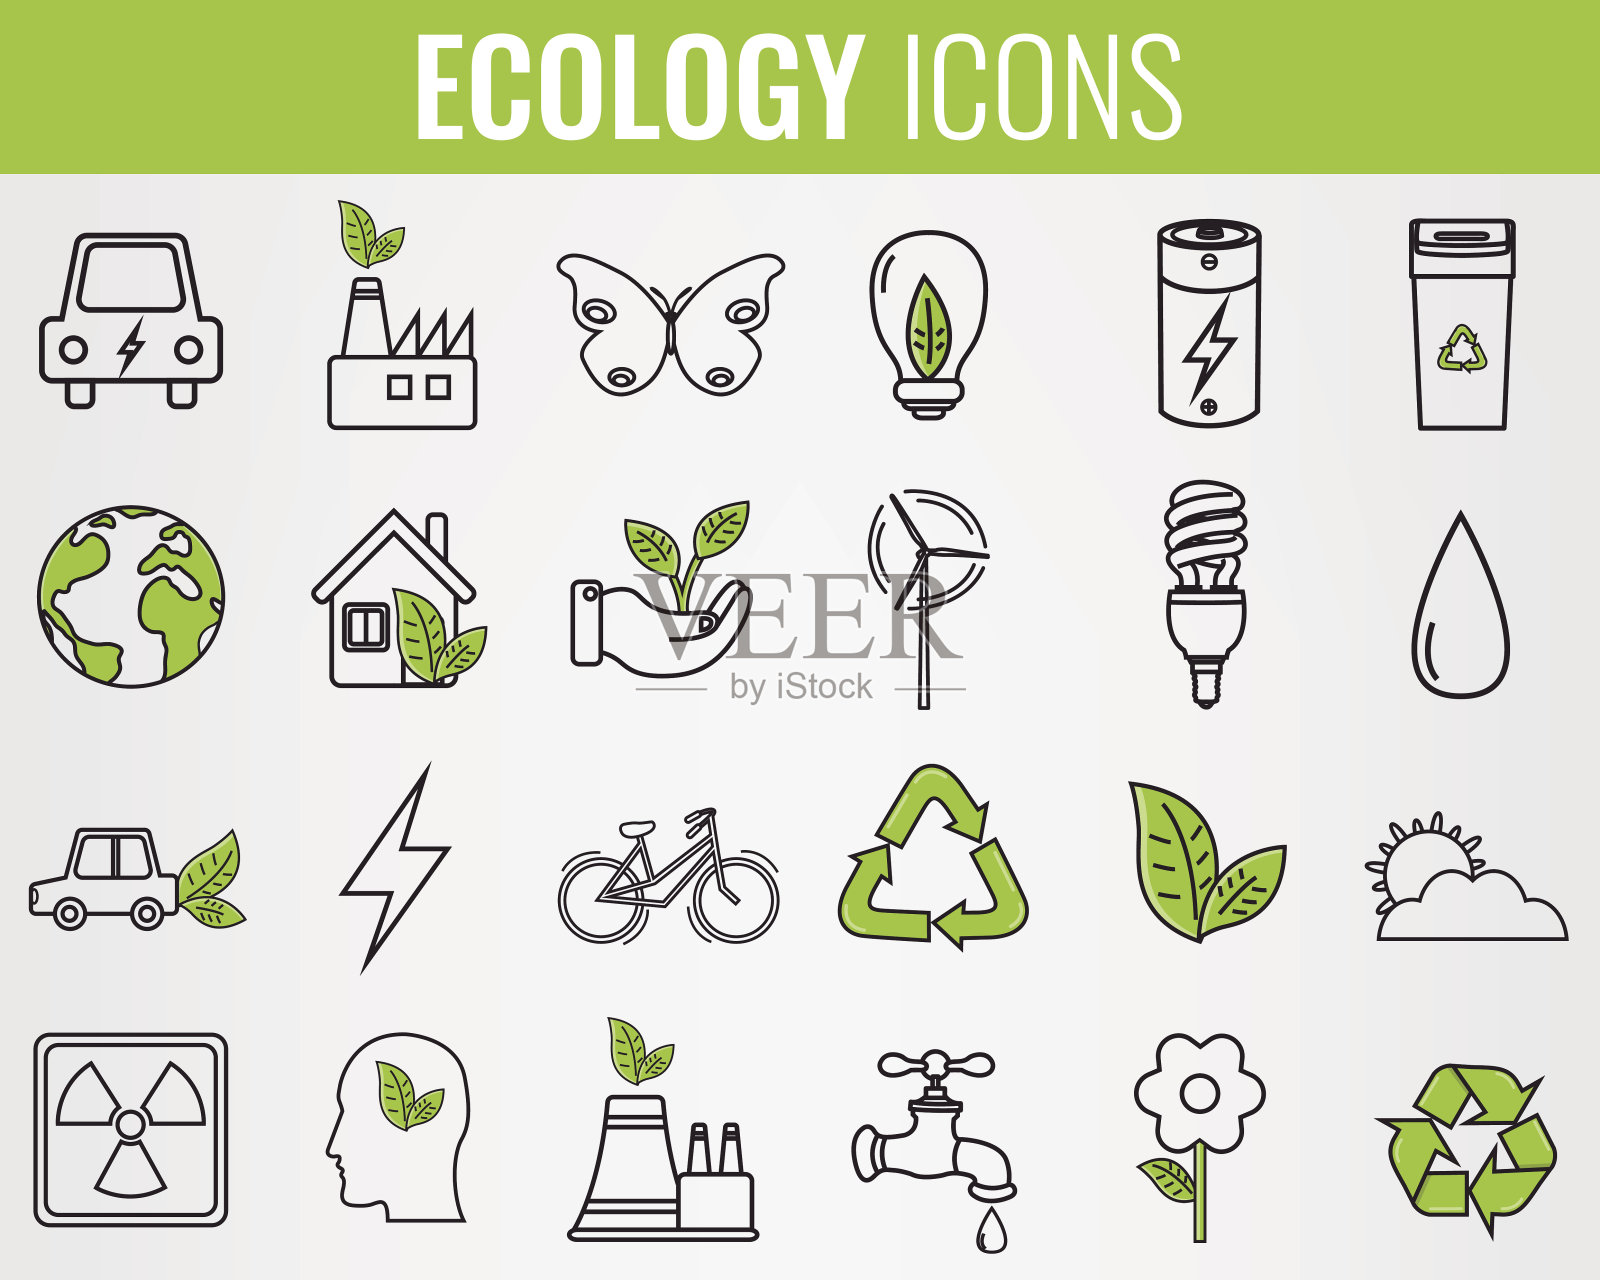 生态学的图标集。可再生能源、绿色技术的标志。手绘。向量图标素材